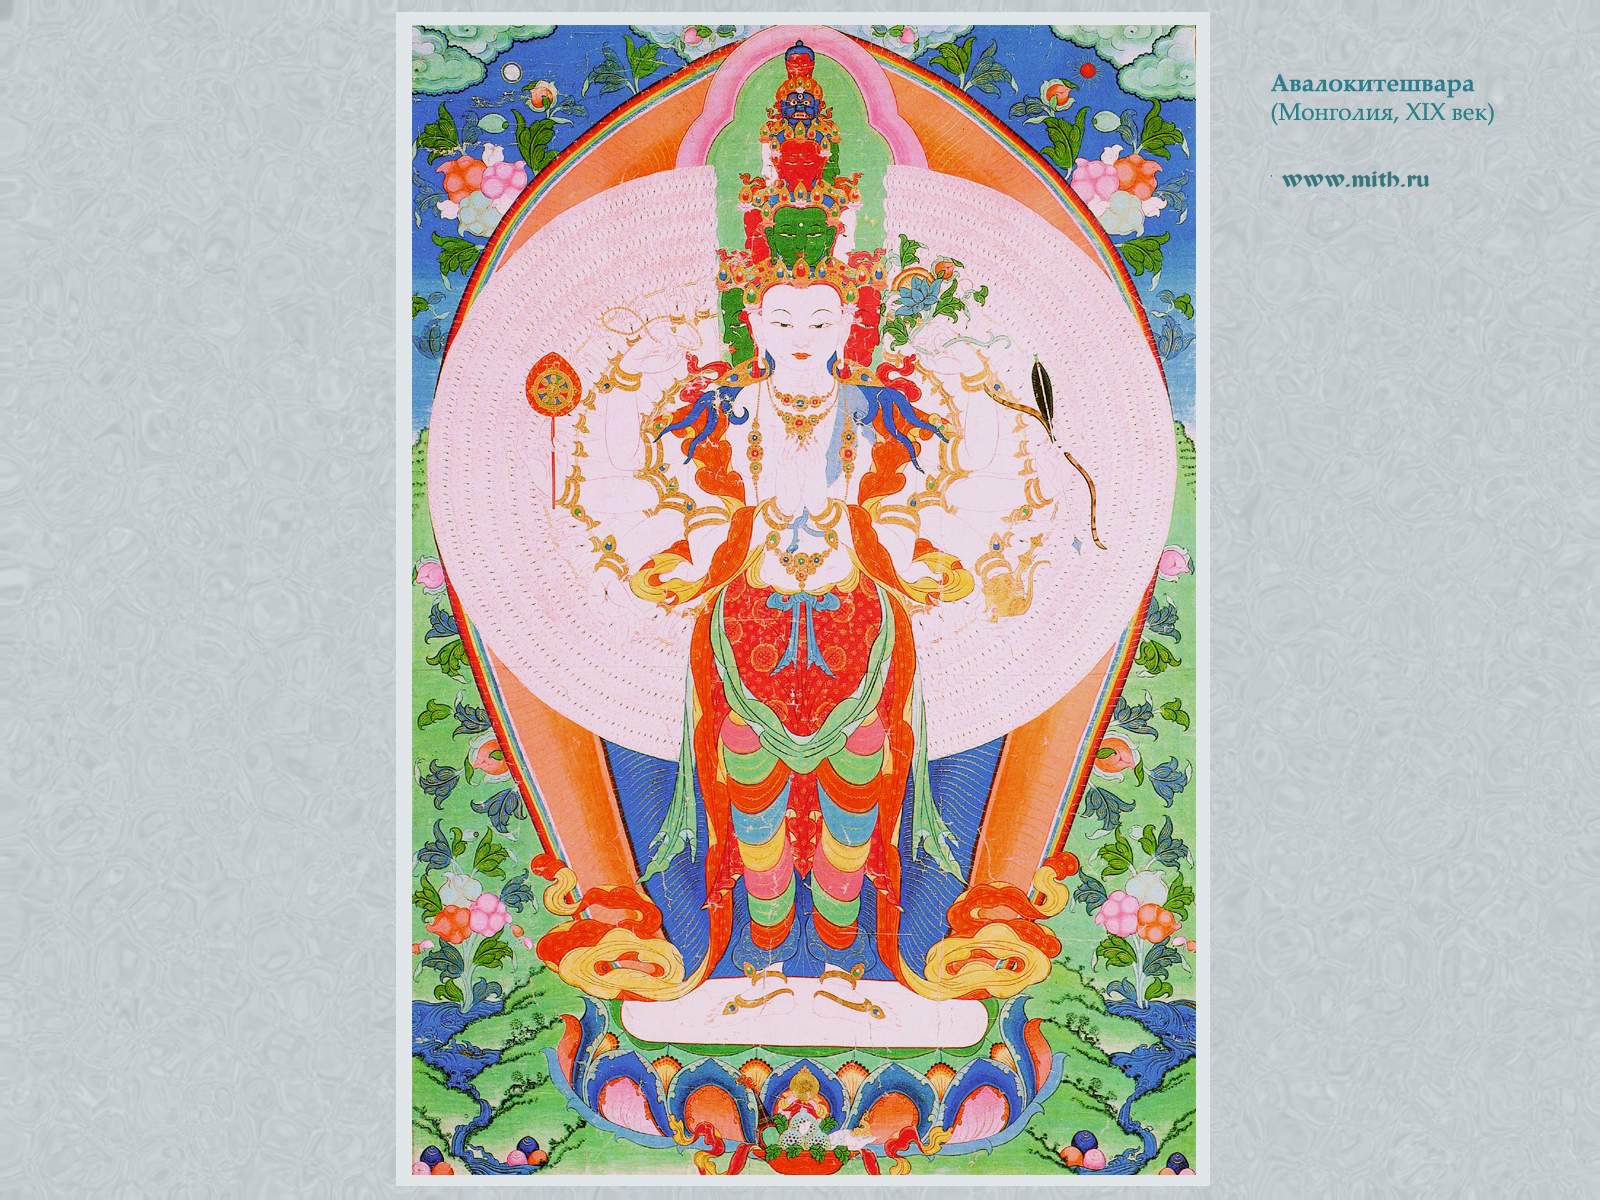 Тысячерукий Авалокитешвара

перейти к книге 'Тибетская живопись'